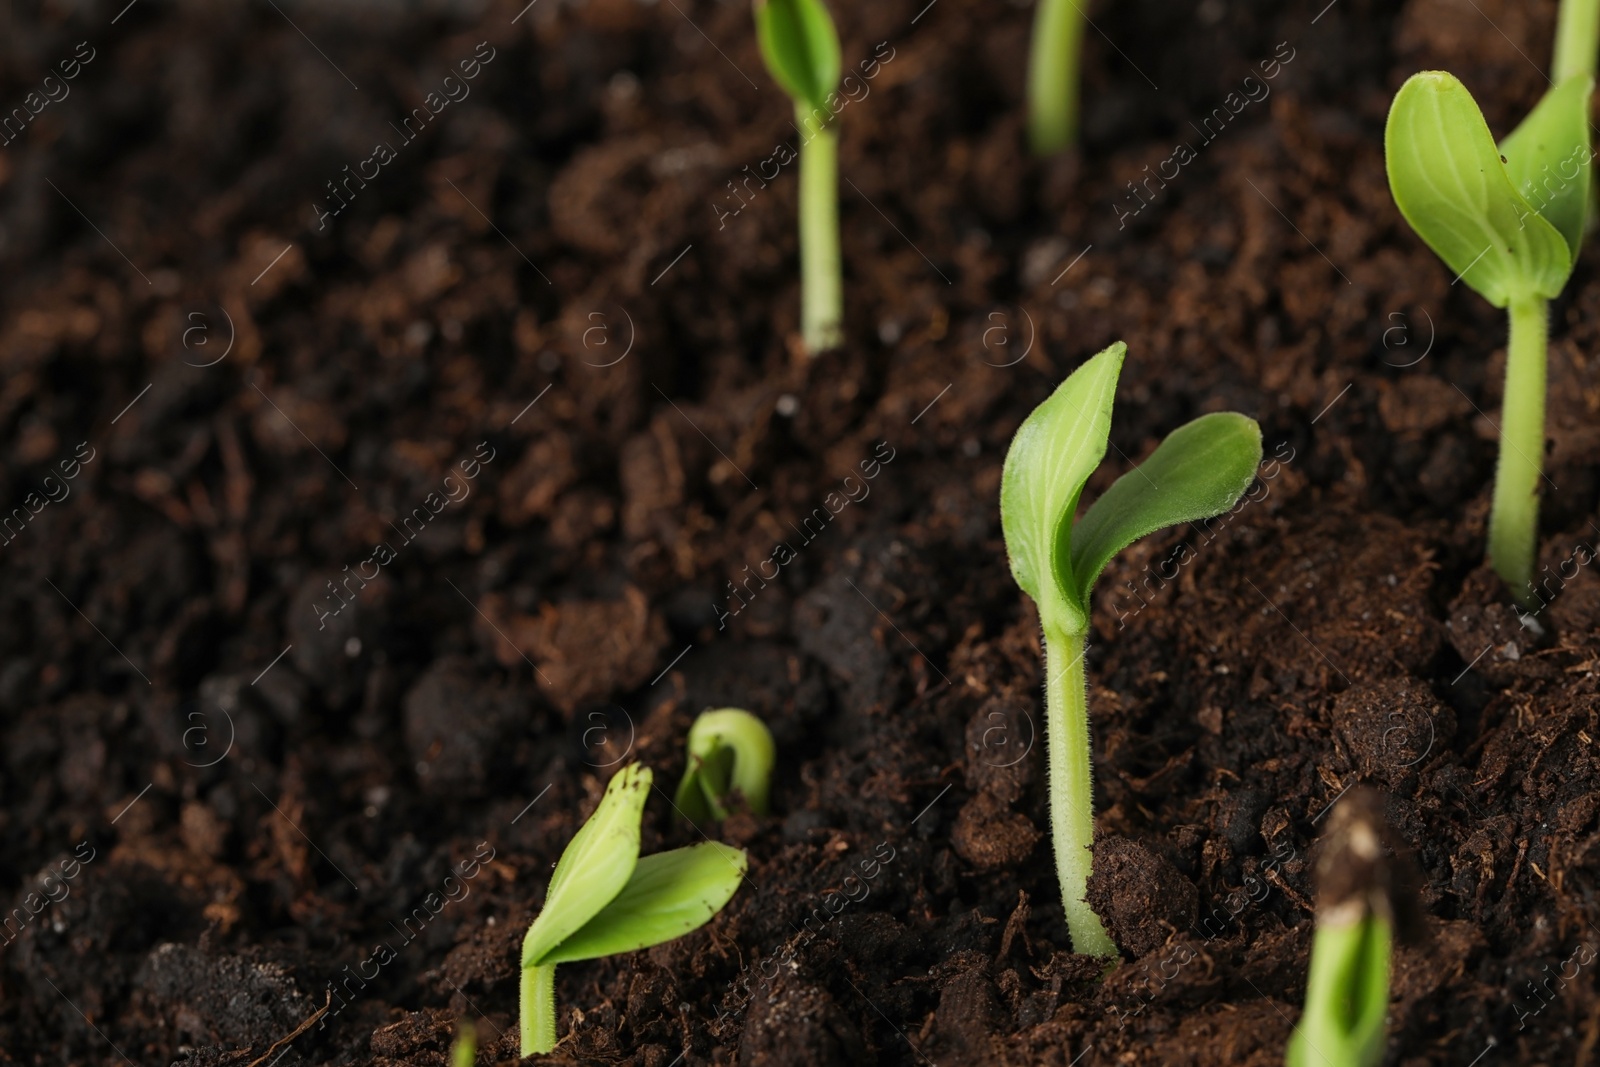 Photo of Little green seedlings growing in soil, closeup